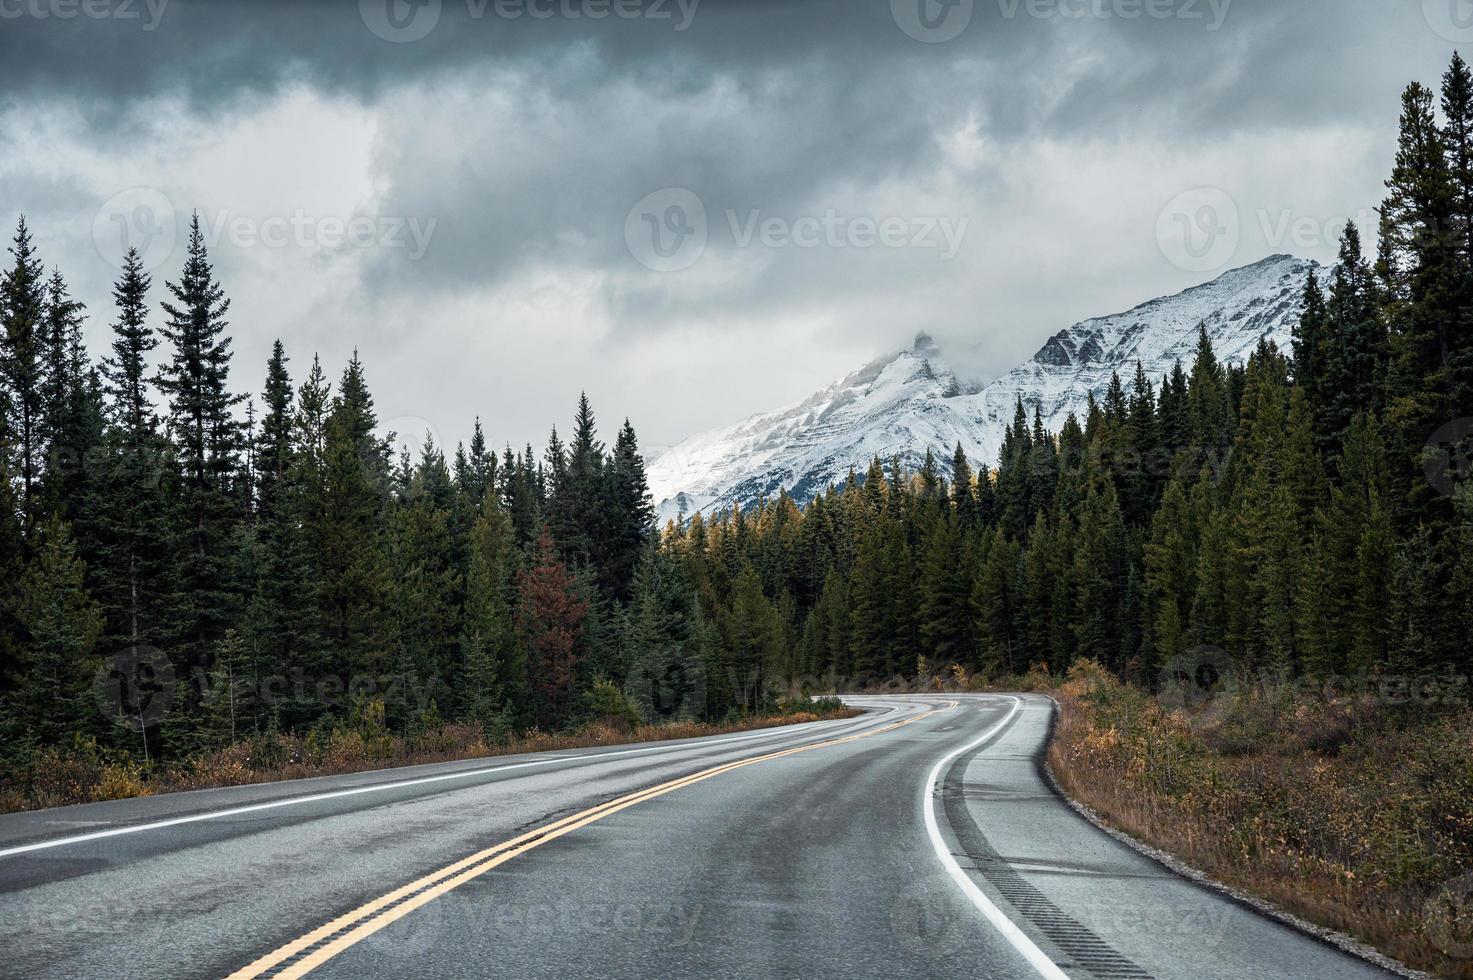 route goudronnée dans la forêt d'automne le jour sombre au parc national banff photo